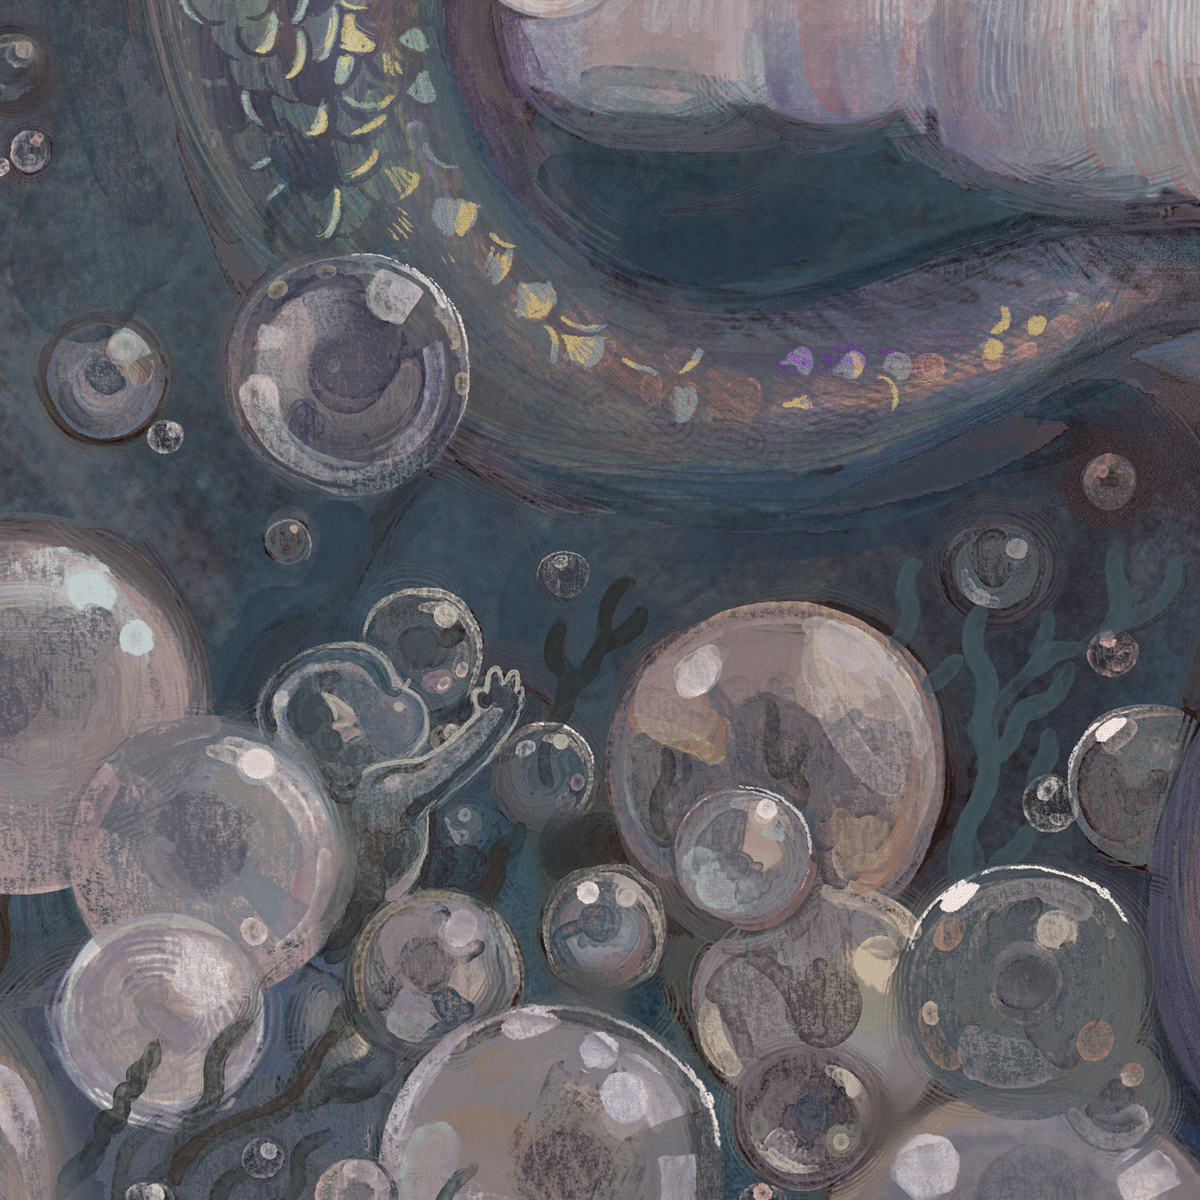 ILLUSTRATION  Isolation mermaid oyster pearl sirene venus